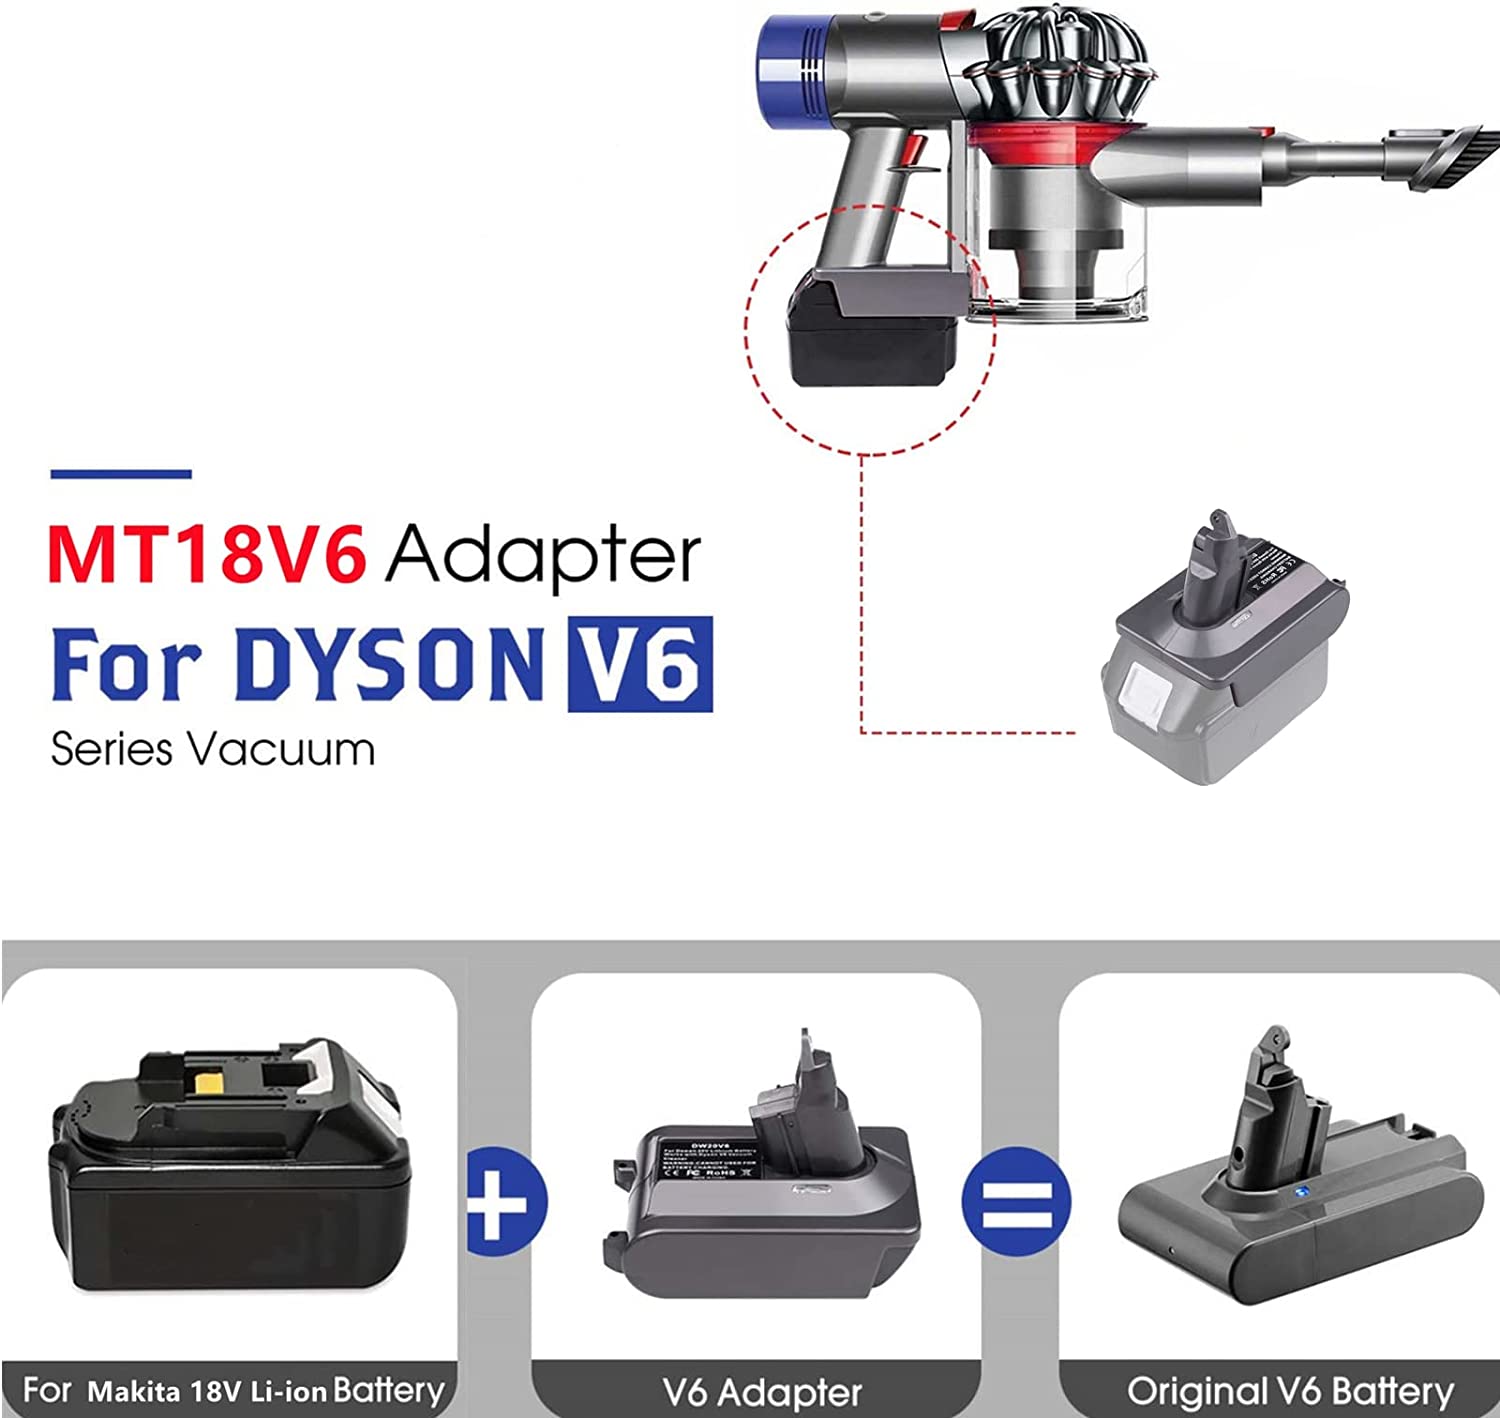 Dyson V6 baterijos adapteris, skirtas Makita 18V ličio baterijai, konvertuotas į Dyson V6 bateriją